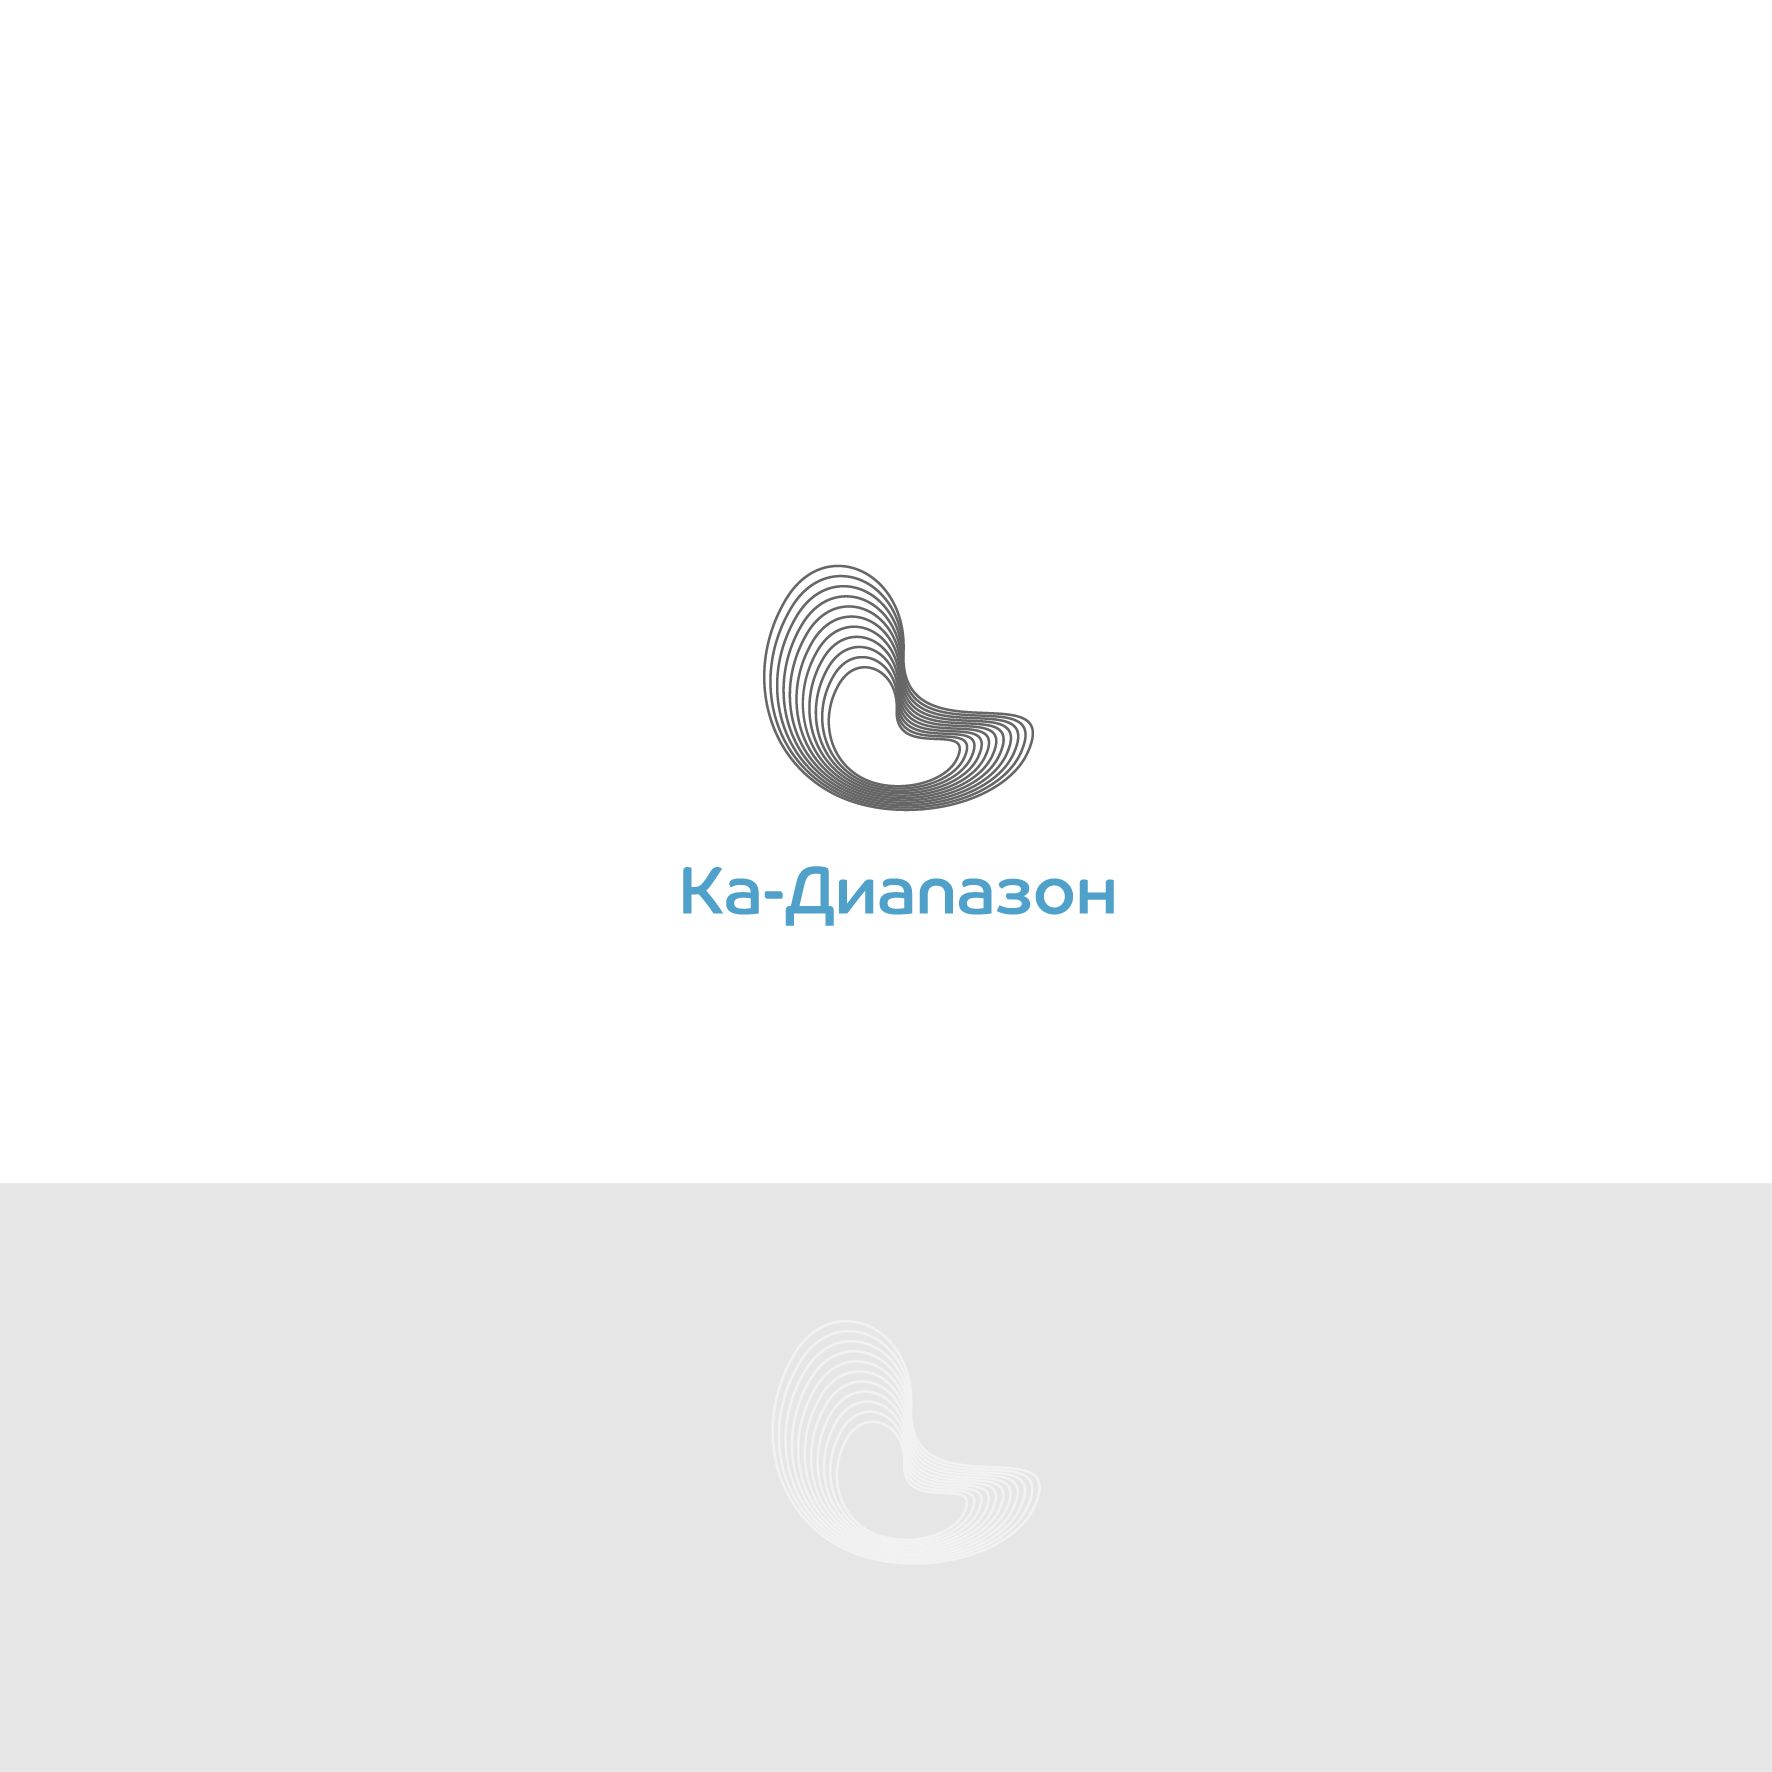 Логотип для Ка-диапазон - дизайнер andrich28